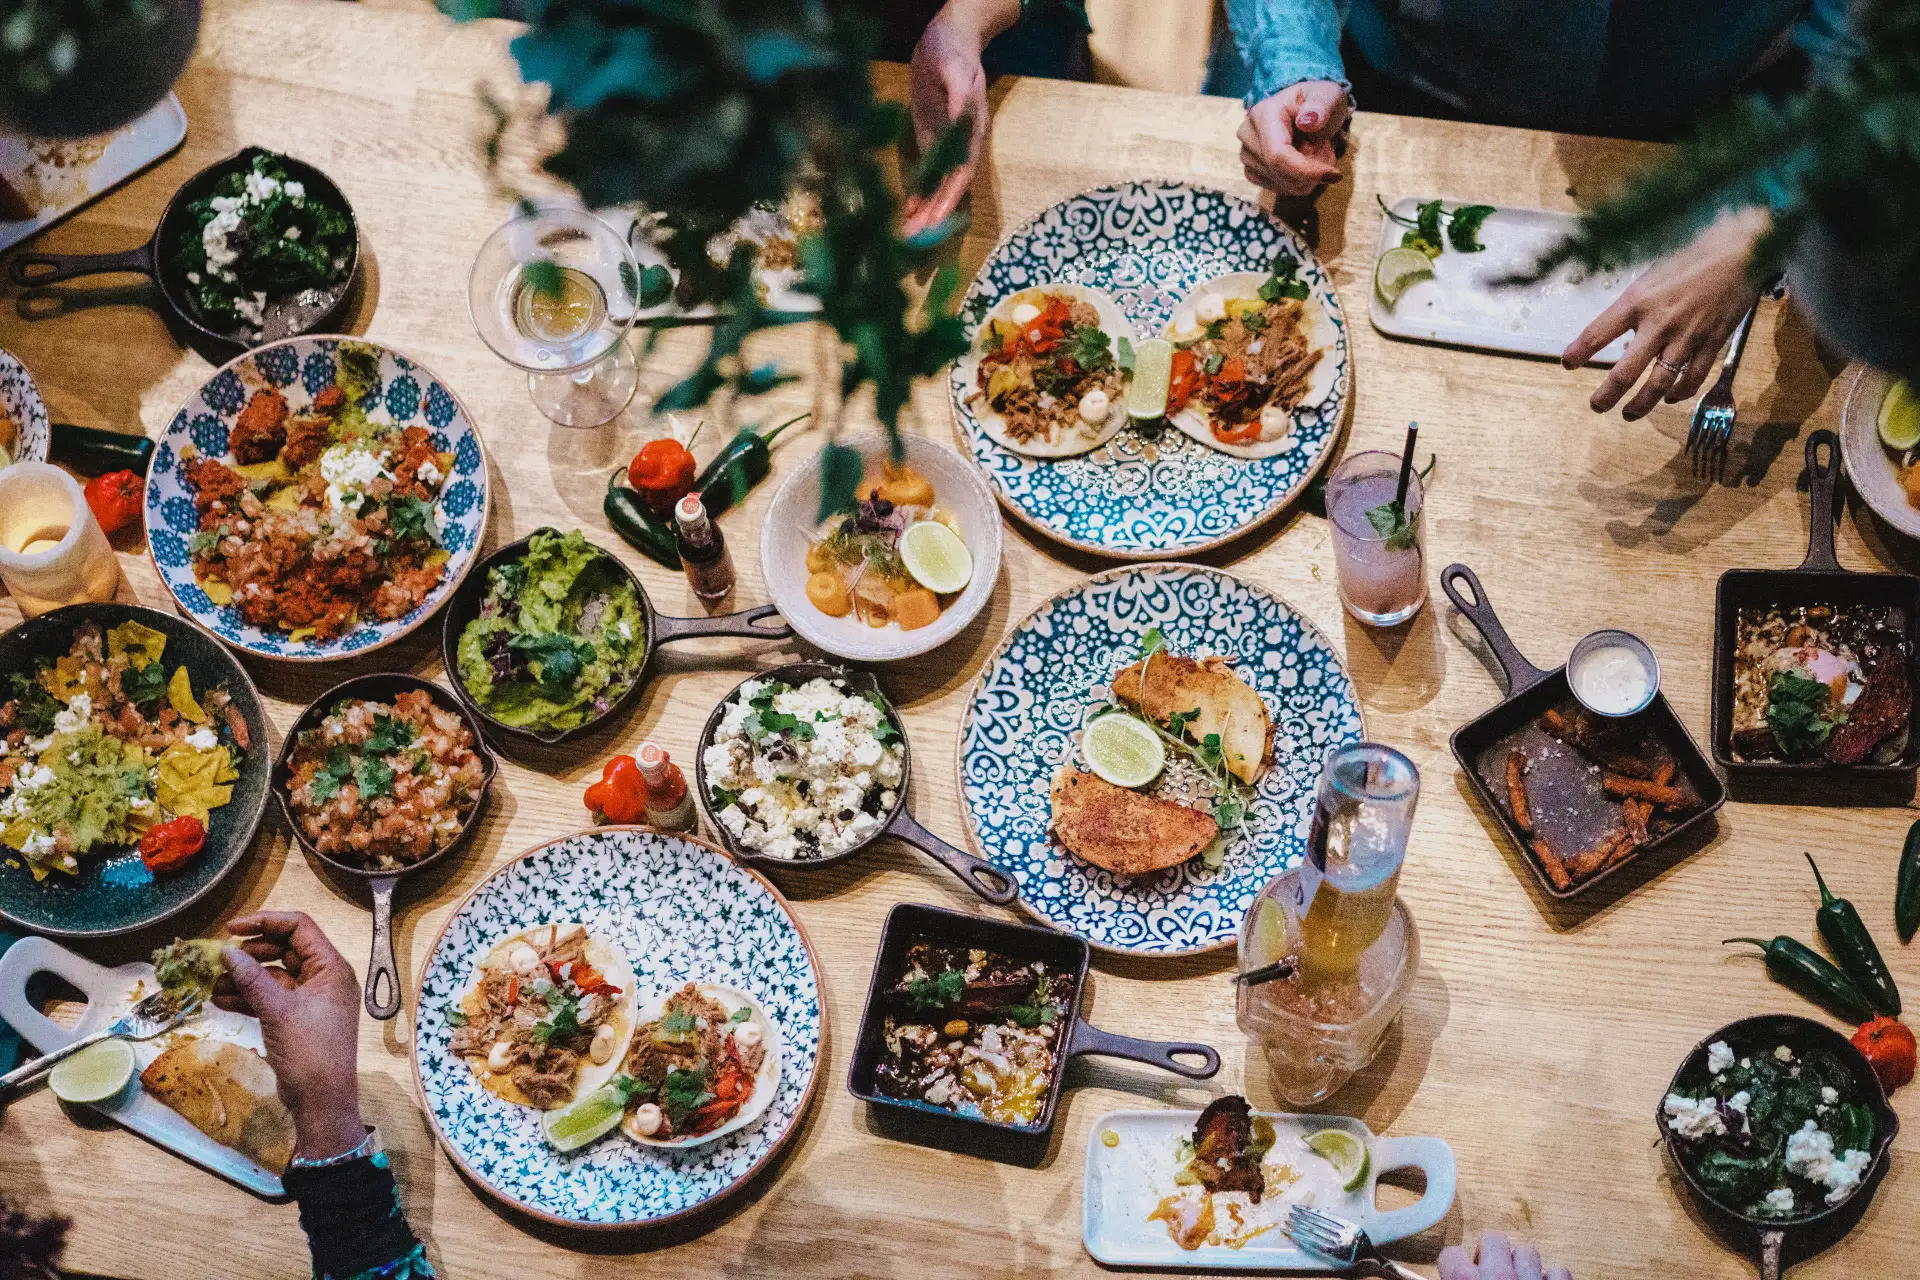 Eatery Social Taqueria - Restaurang i Malmö